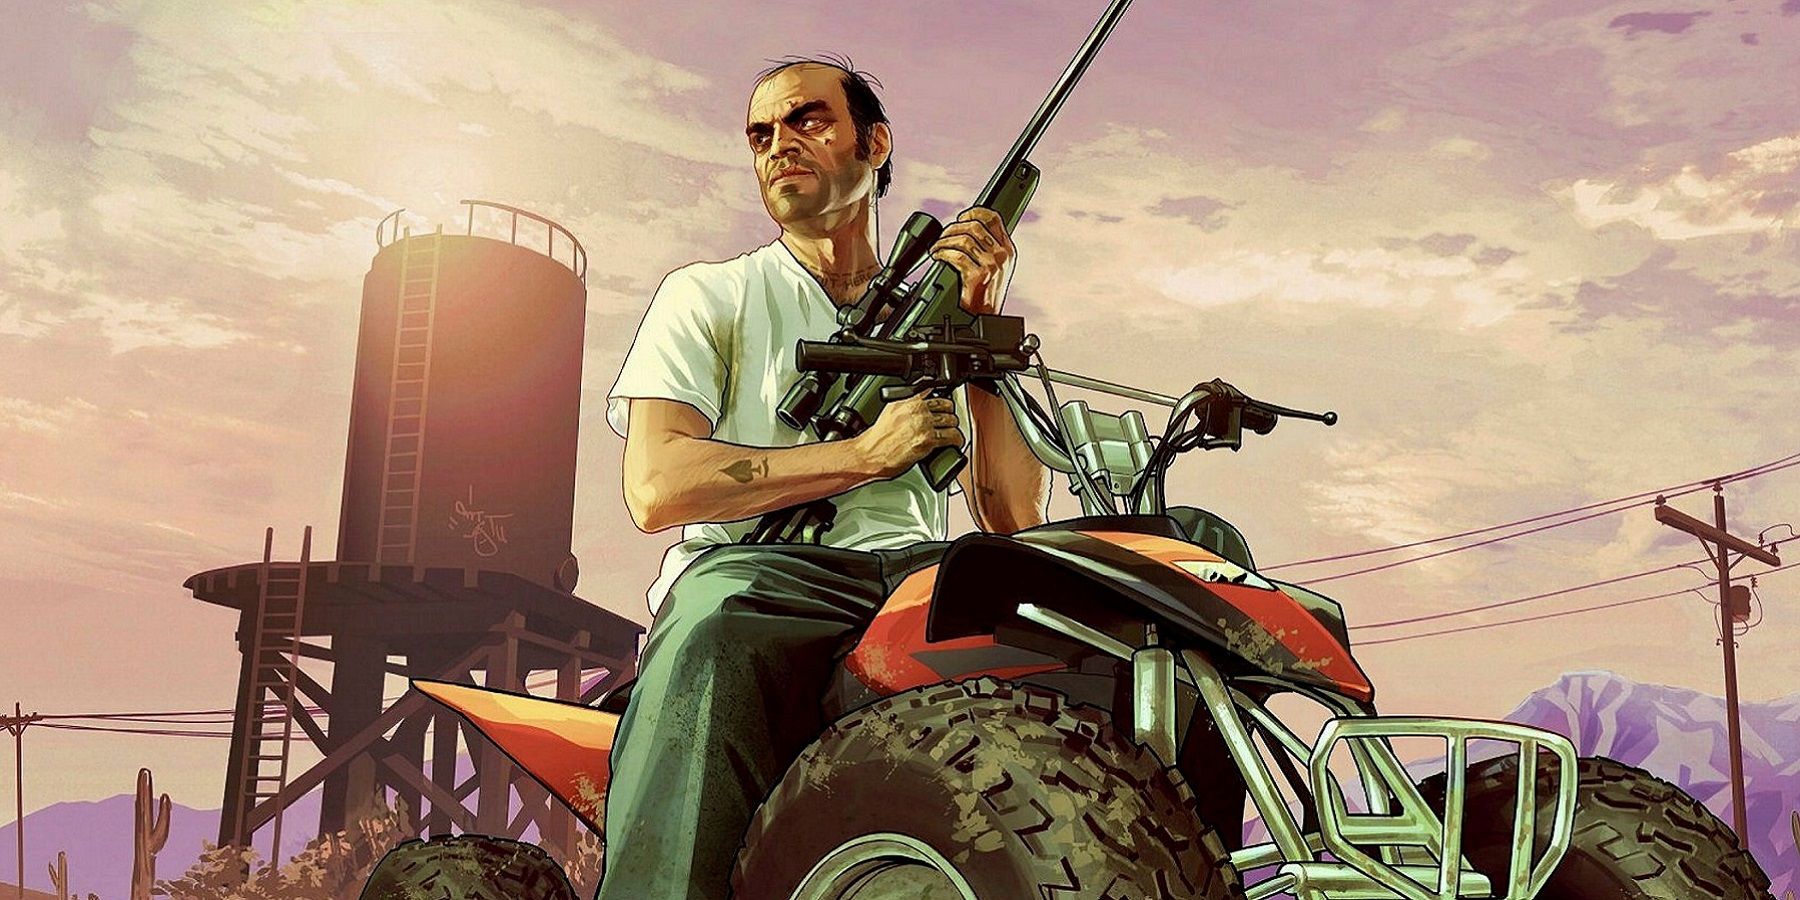 Скриншоты Grand Theft Auto 5 Сравните новую серию PS5/Xbox с текущей версией для ПК